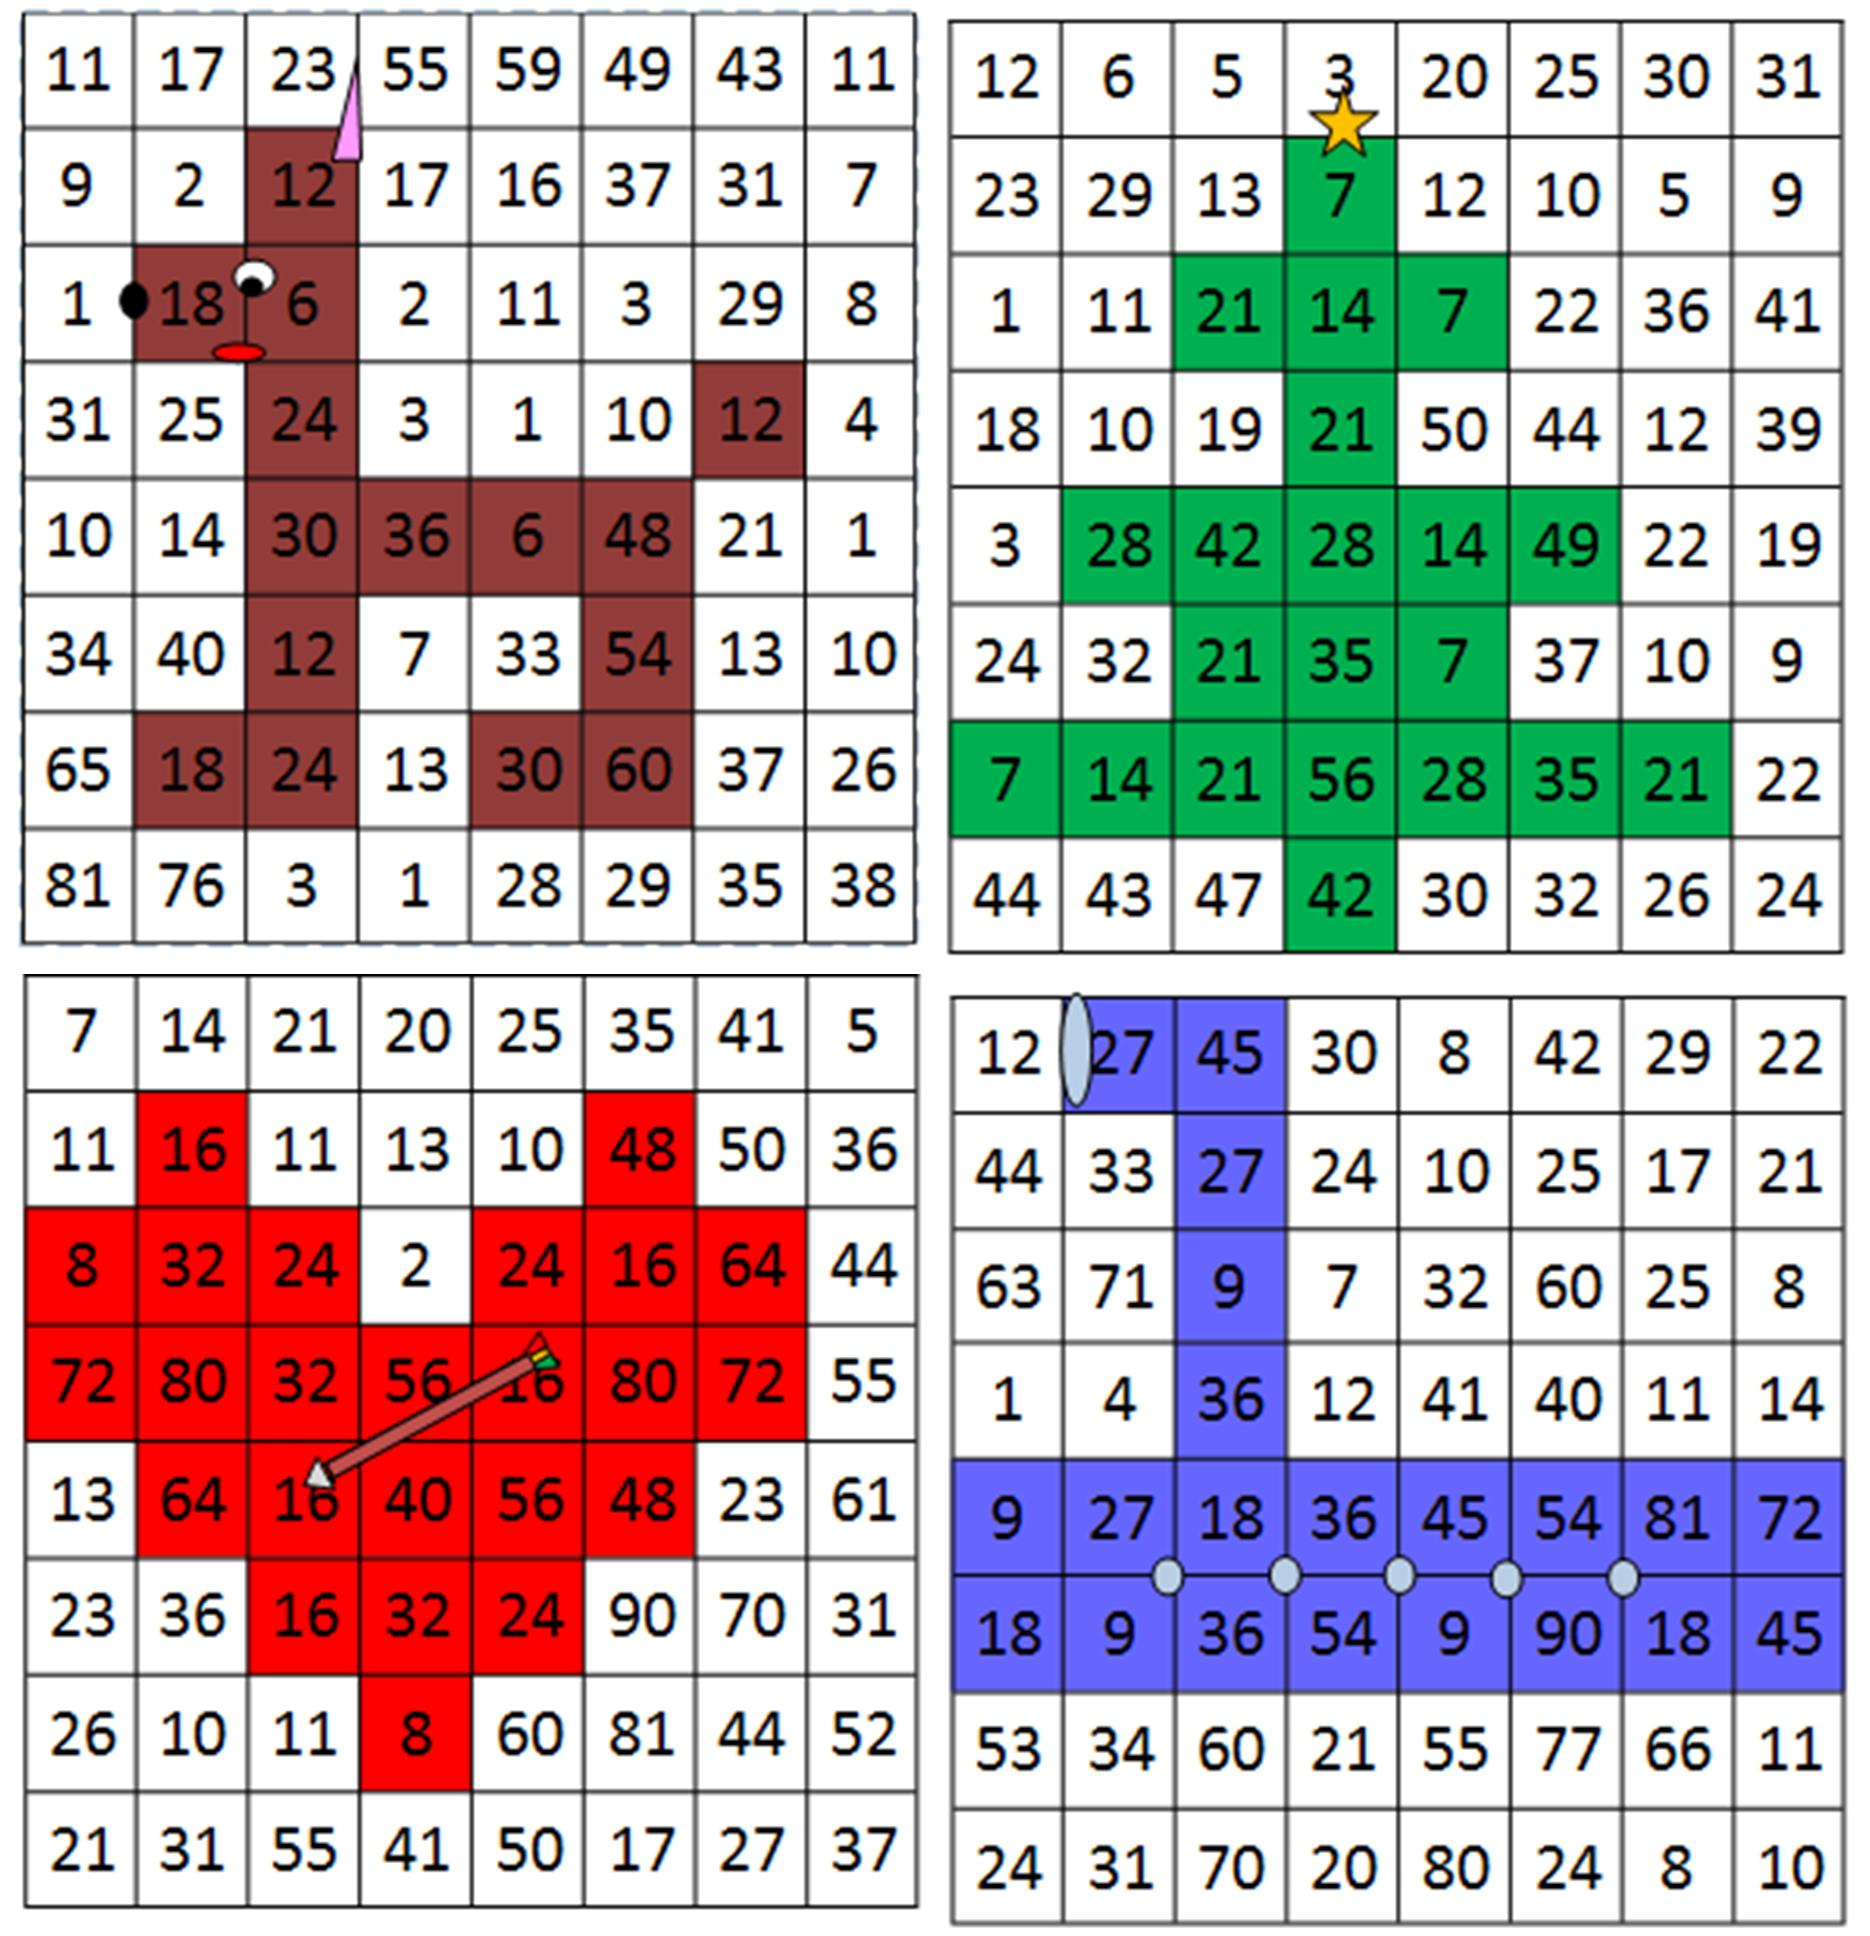 Apprendre Les Tables En S&amp;#039;amusant | Le Blog De Monsieur Mathieu destiné Apprendre Les Tables De Multiplication En S Amusant 